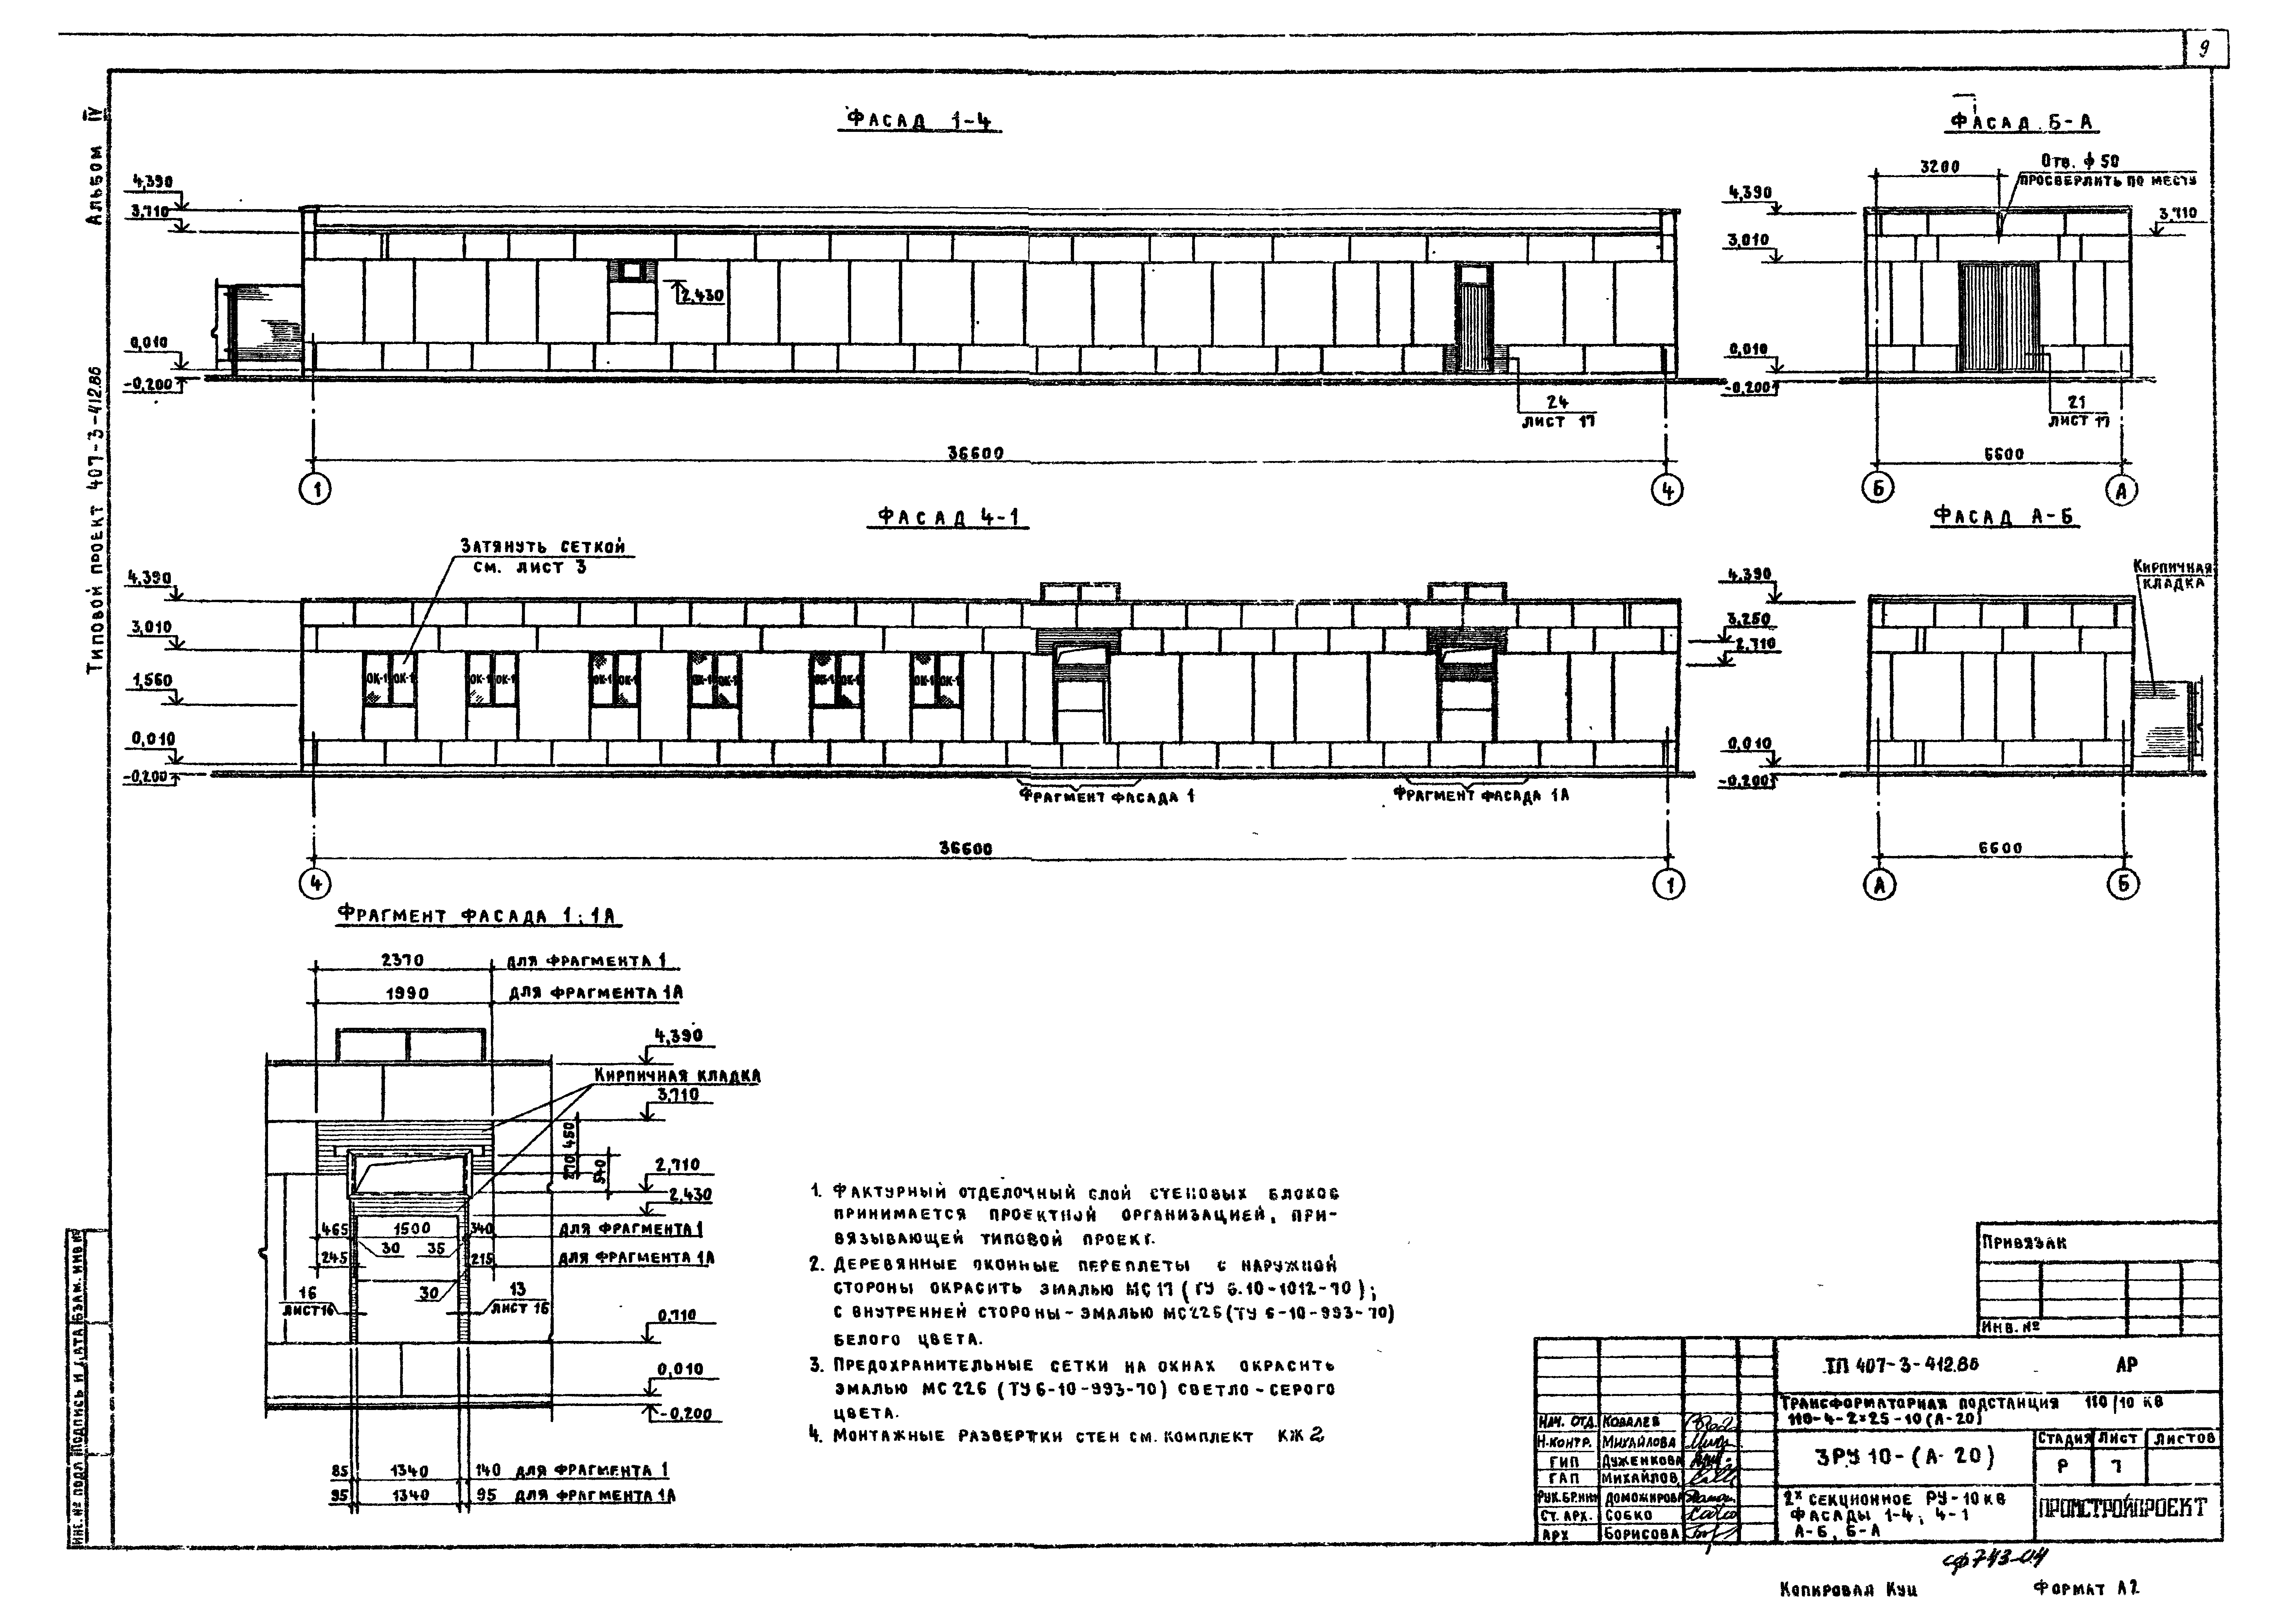 Типовой проект 407-3-412.86